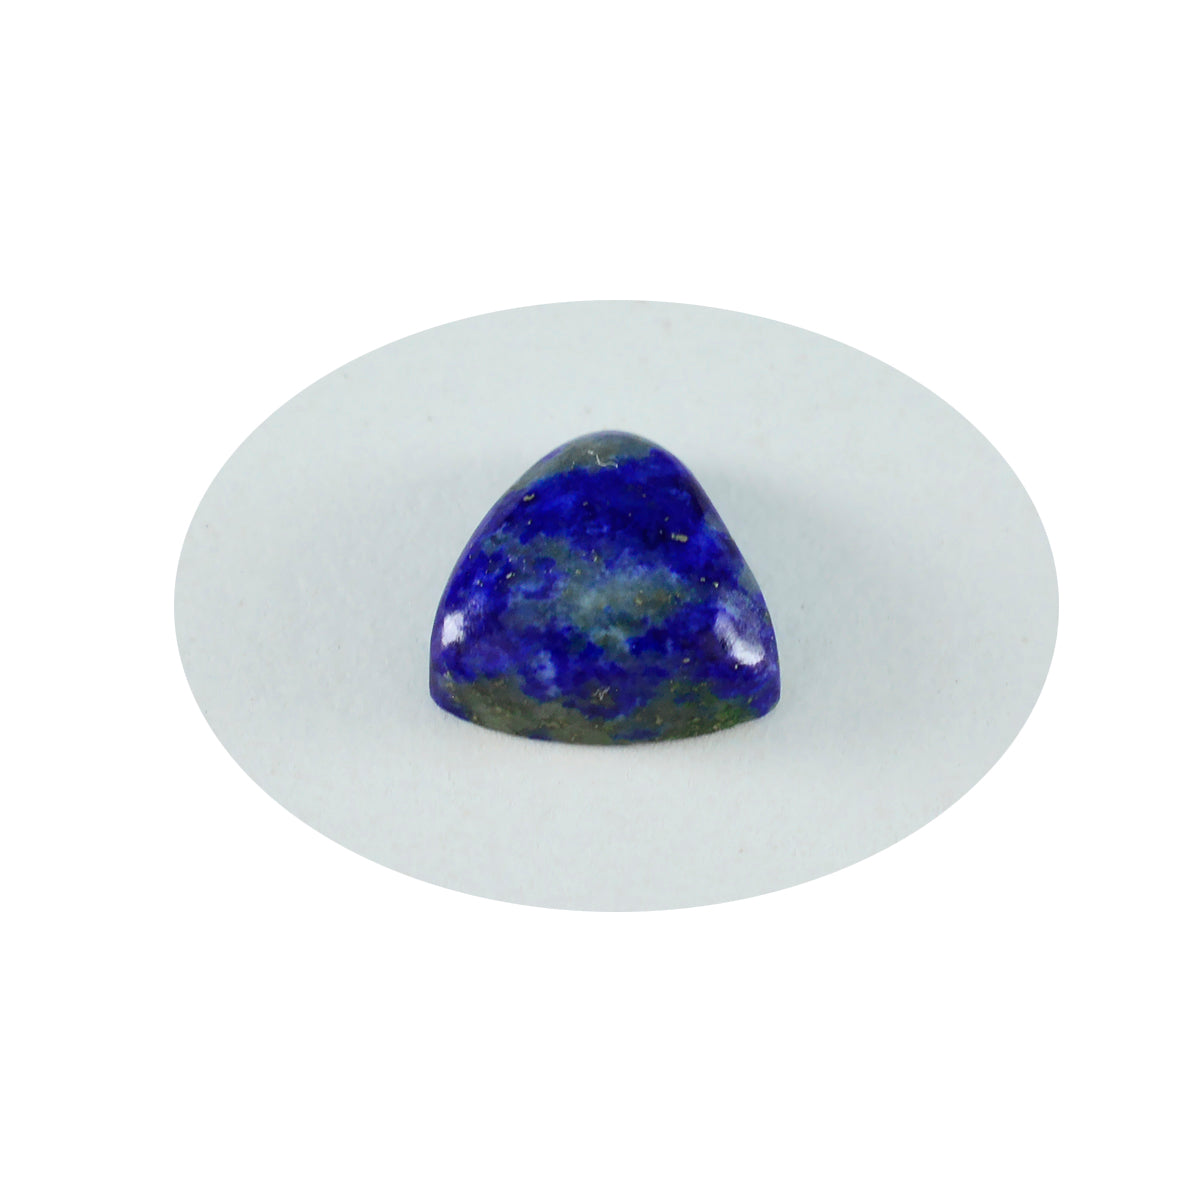 riyogems 1 st blå lapis lazuli cabochon 11x11 mm biljoner form snygg kvalitetssten